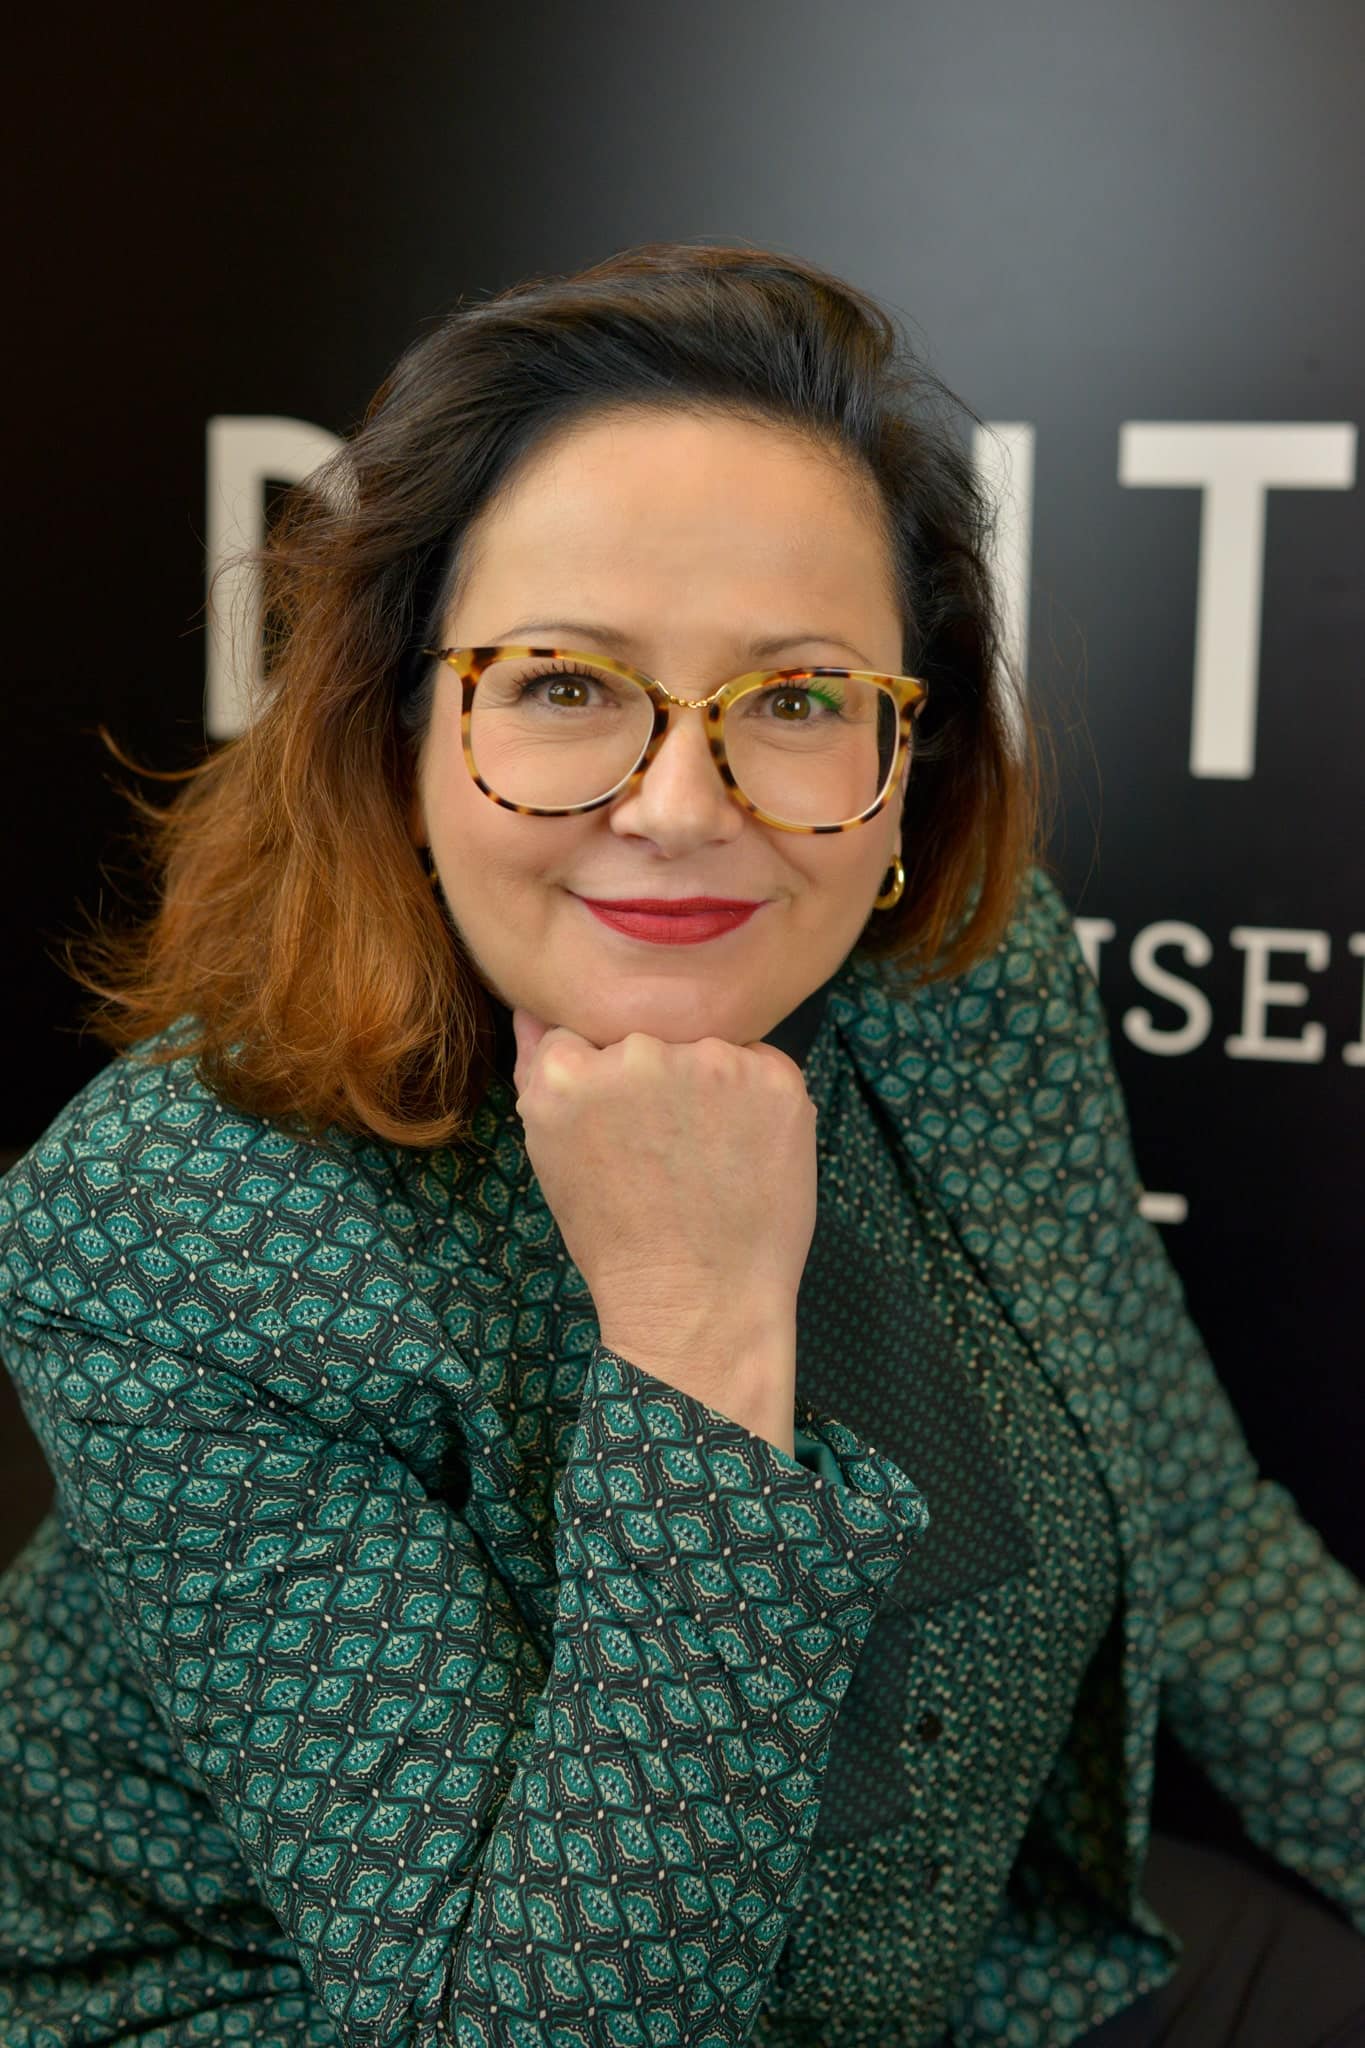 Sandrine Hirigoyen